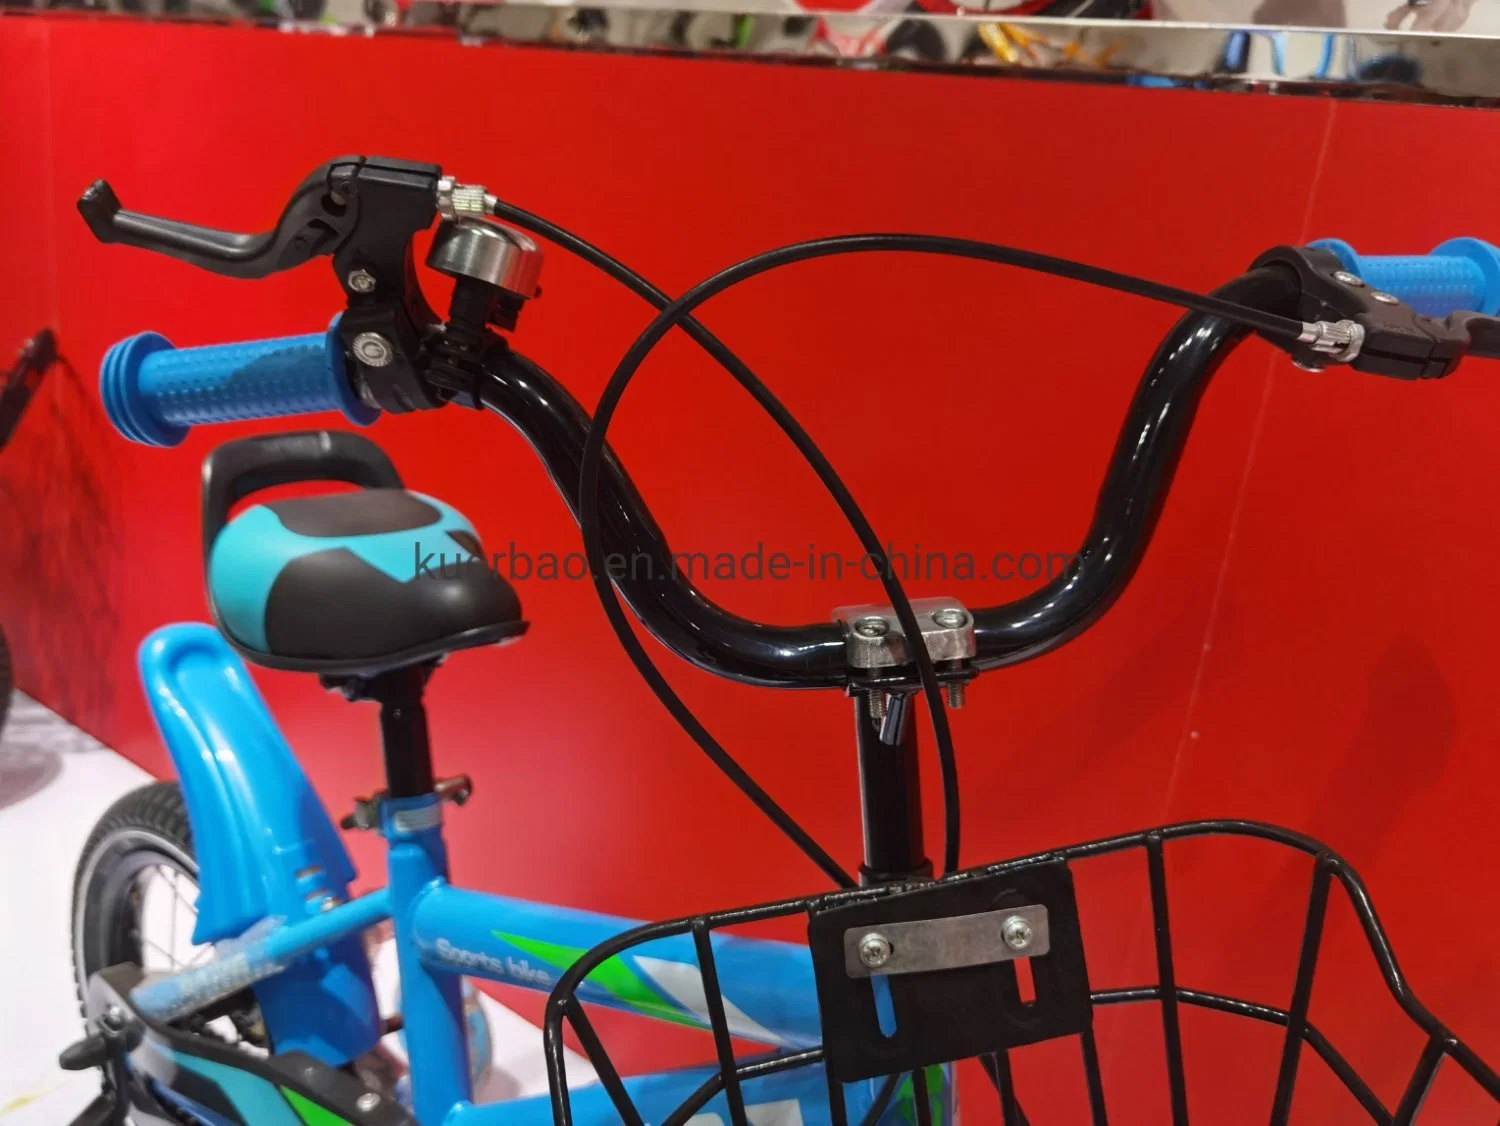 Últimas 16 pulgadas de los niños chicos juguetes bicicletas bicicleta bicicleta para niños